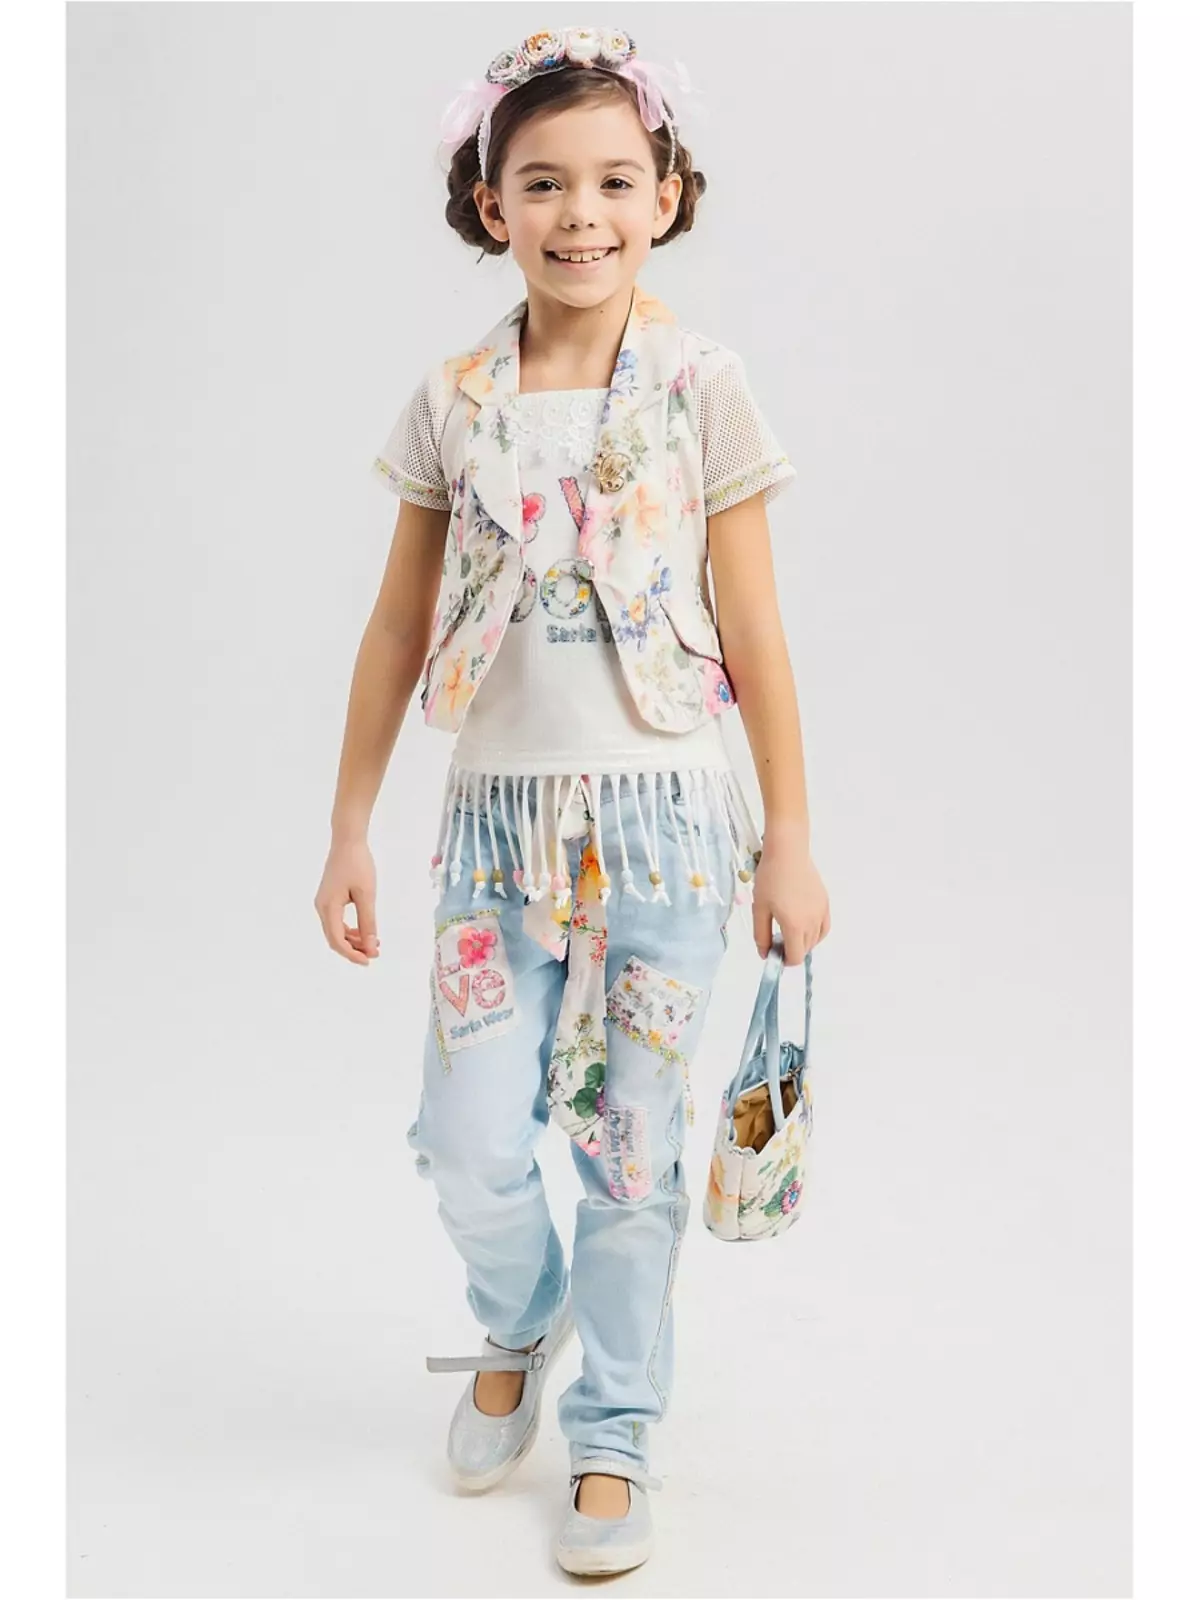 Хаљина за девојчице беба Стеен (50 фотографија): Модели са огртачем, премазом и другом дечијом одећом 3766_29